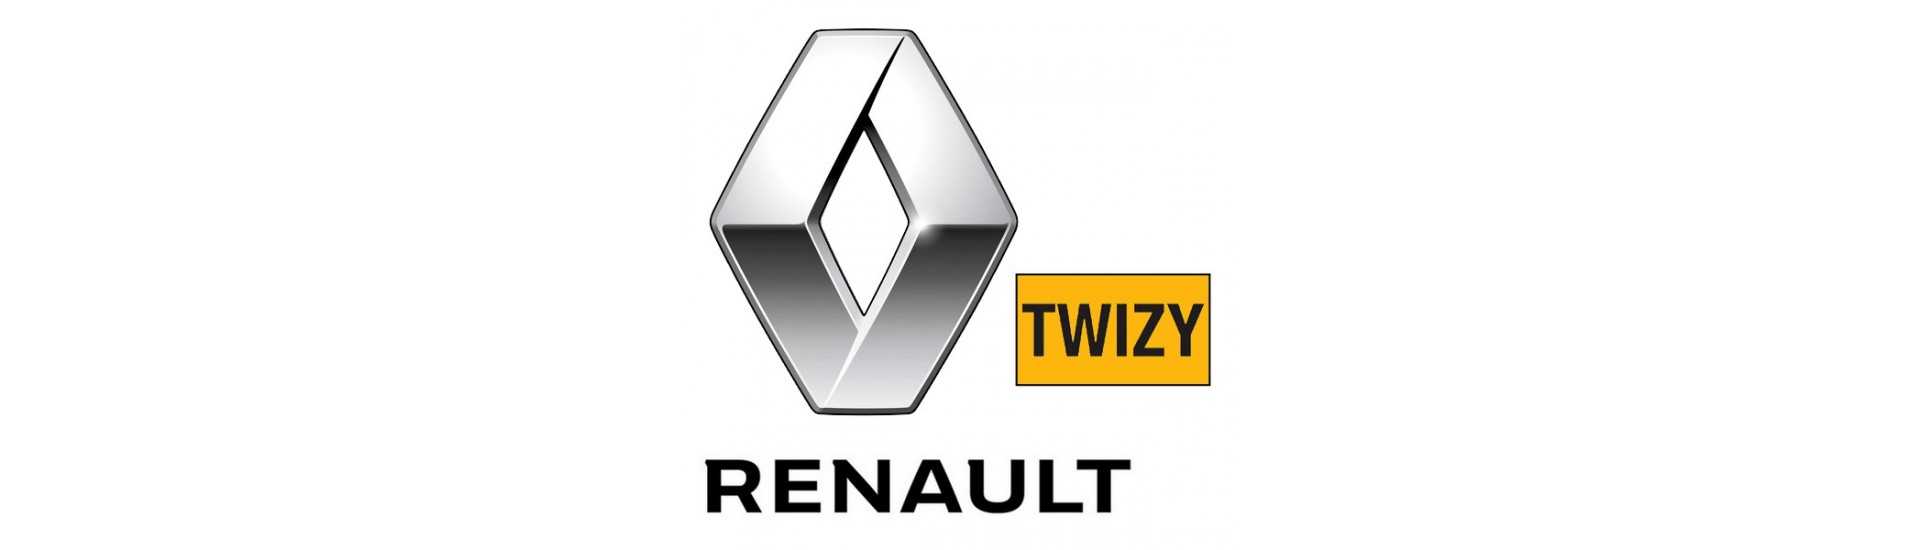 Silent Block zum besten Preis für Auto ohne Lizenz Renault Twizy